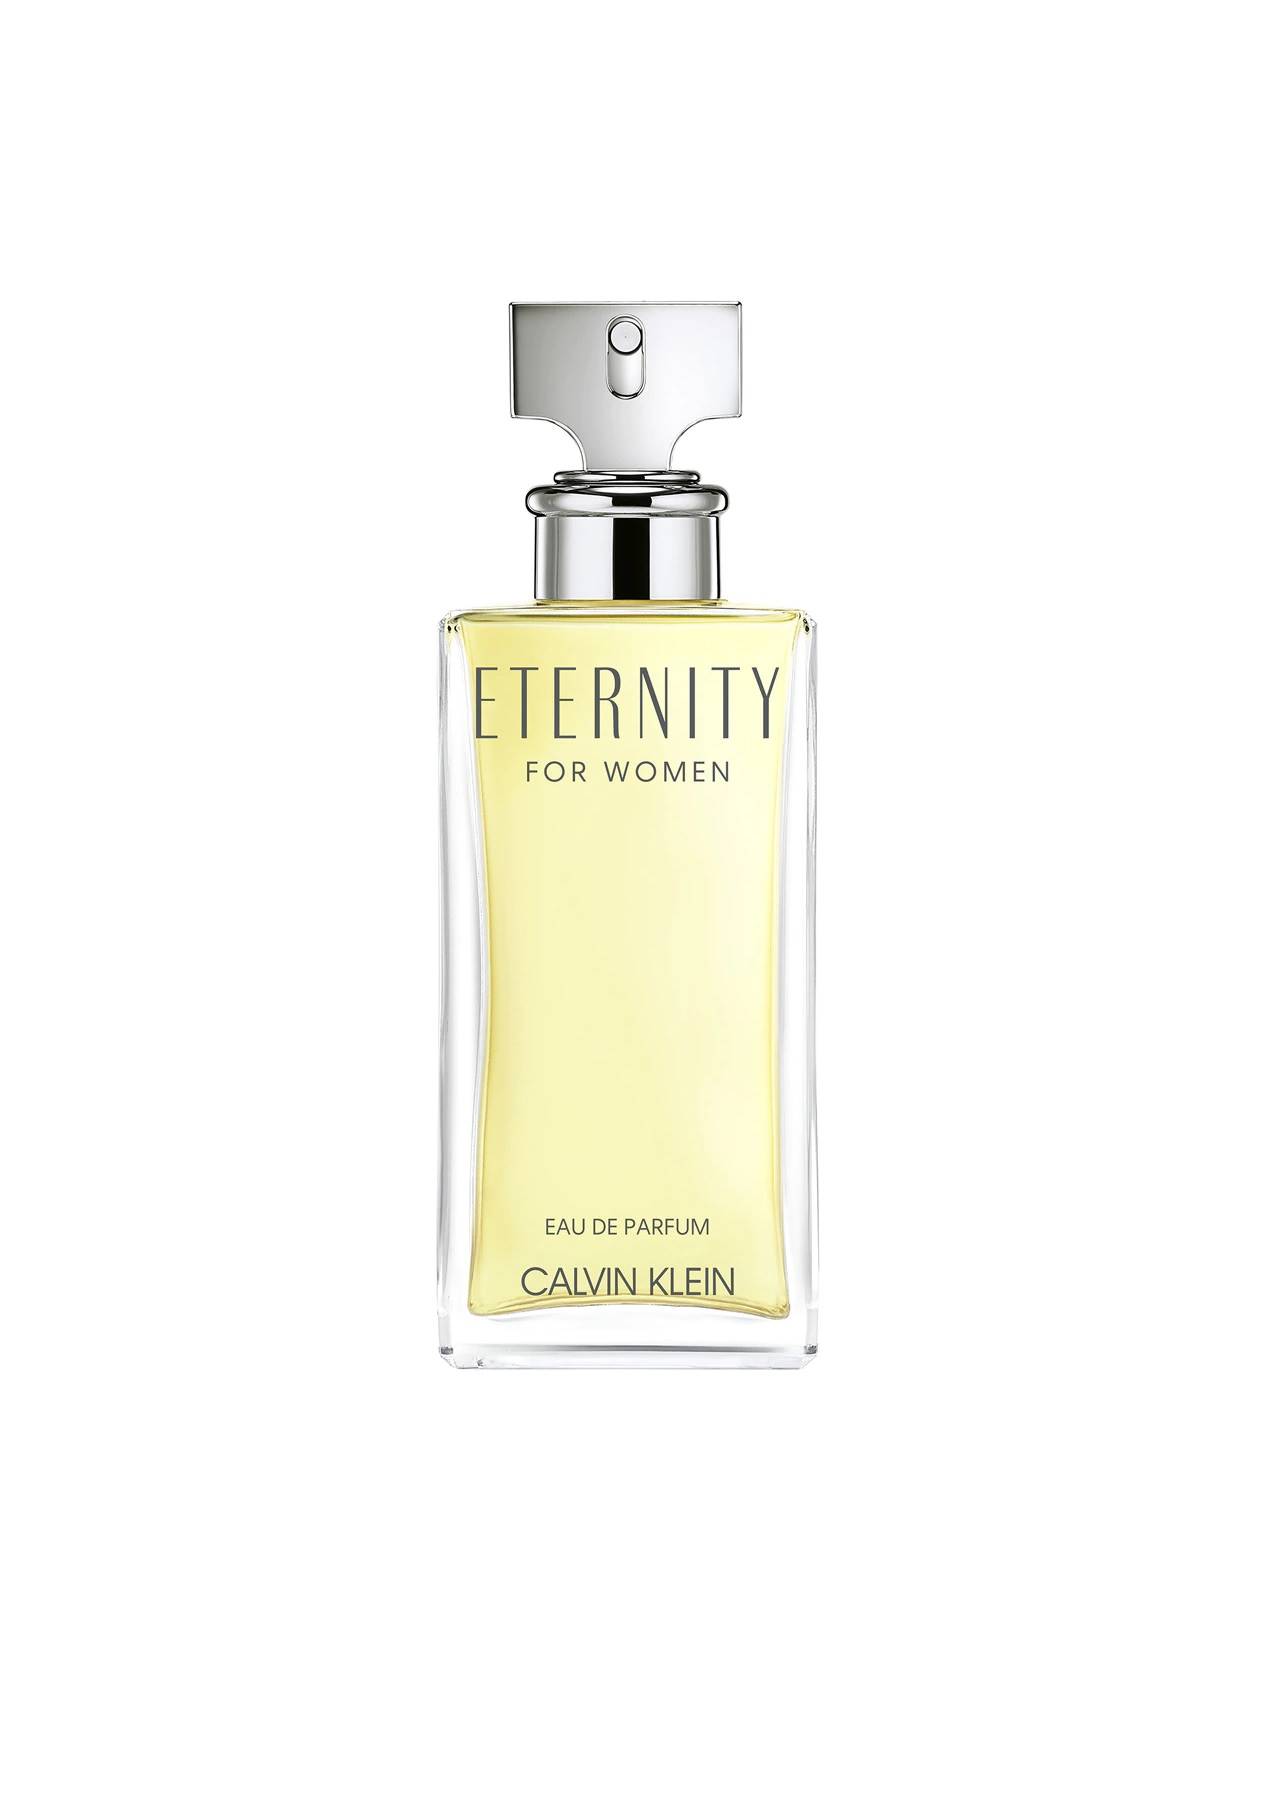 perfumes más vendidos Eternity for Women de Calvin Klein El Corte Inglés, 48,90€